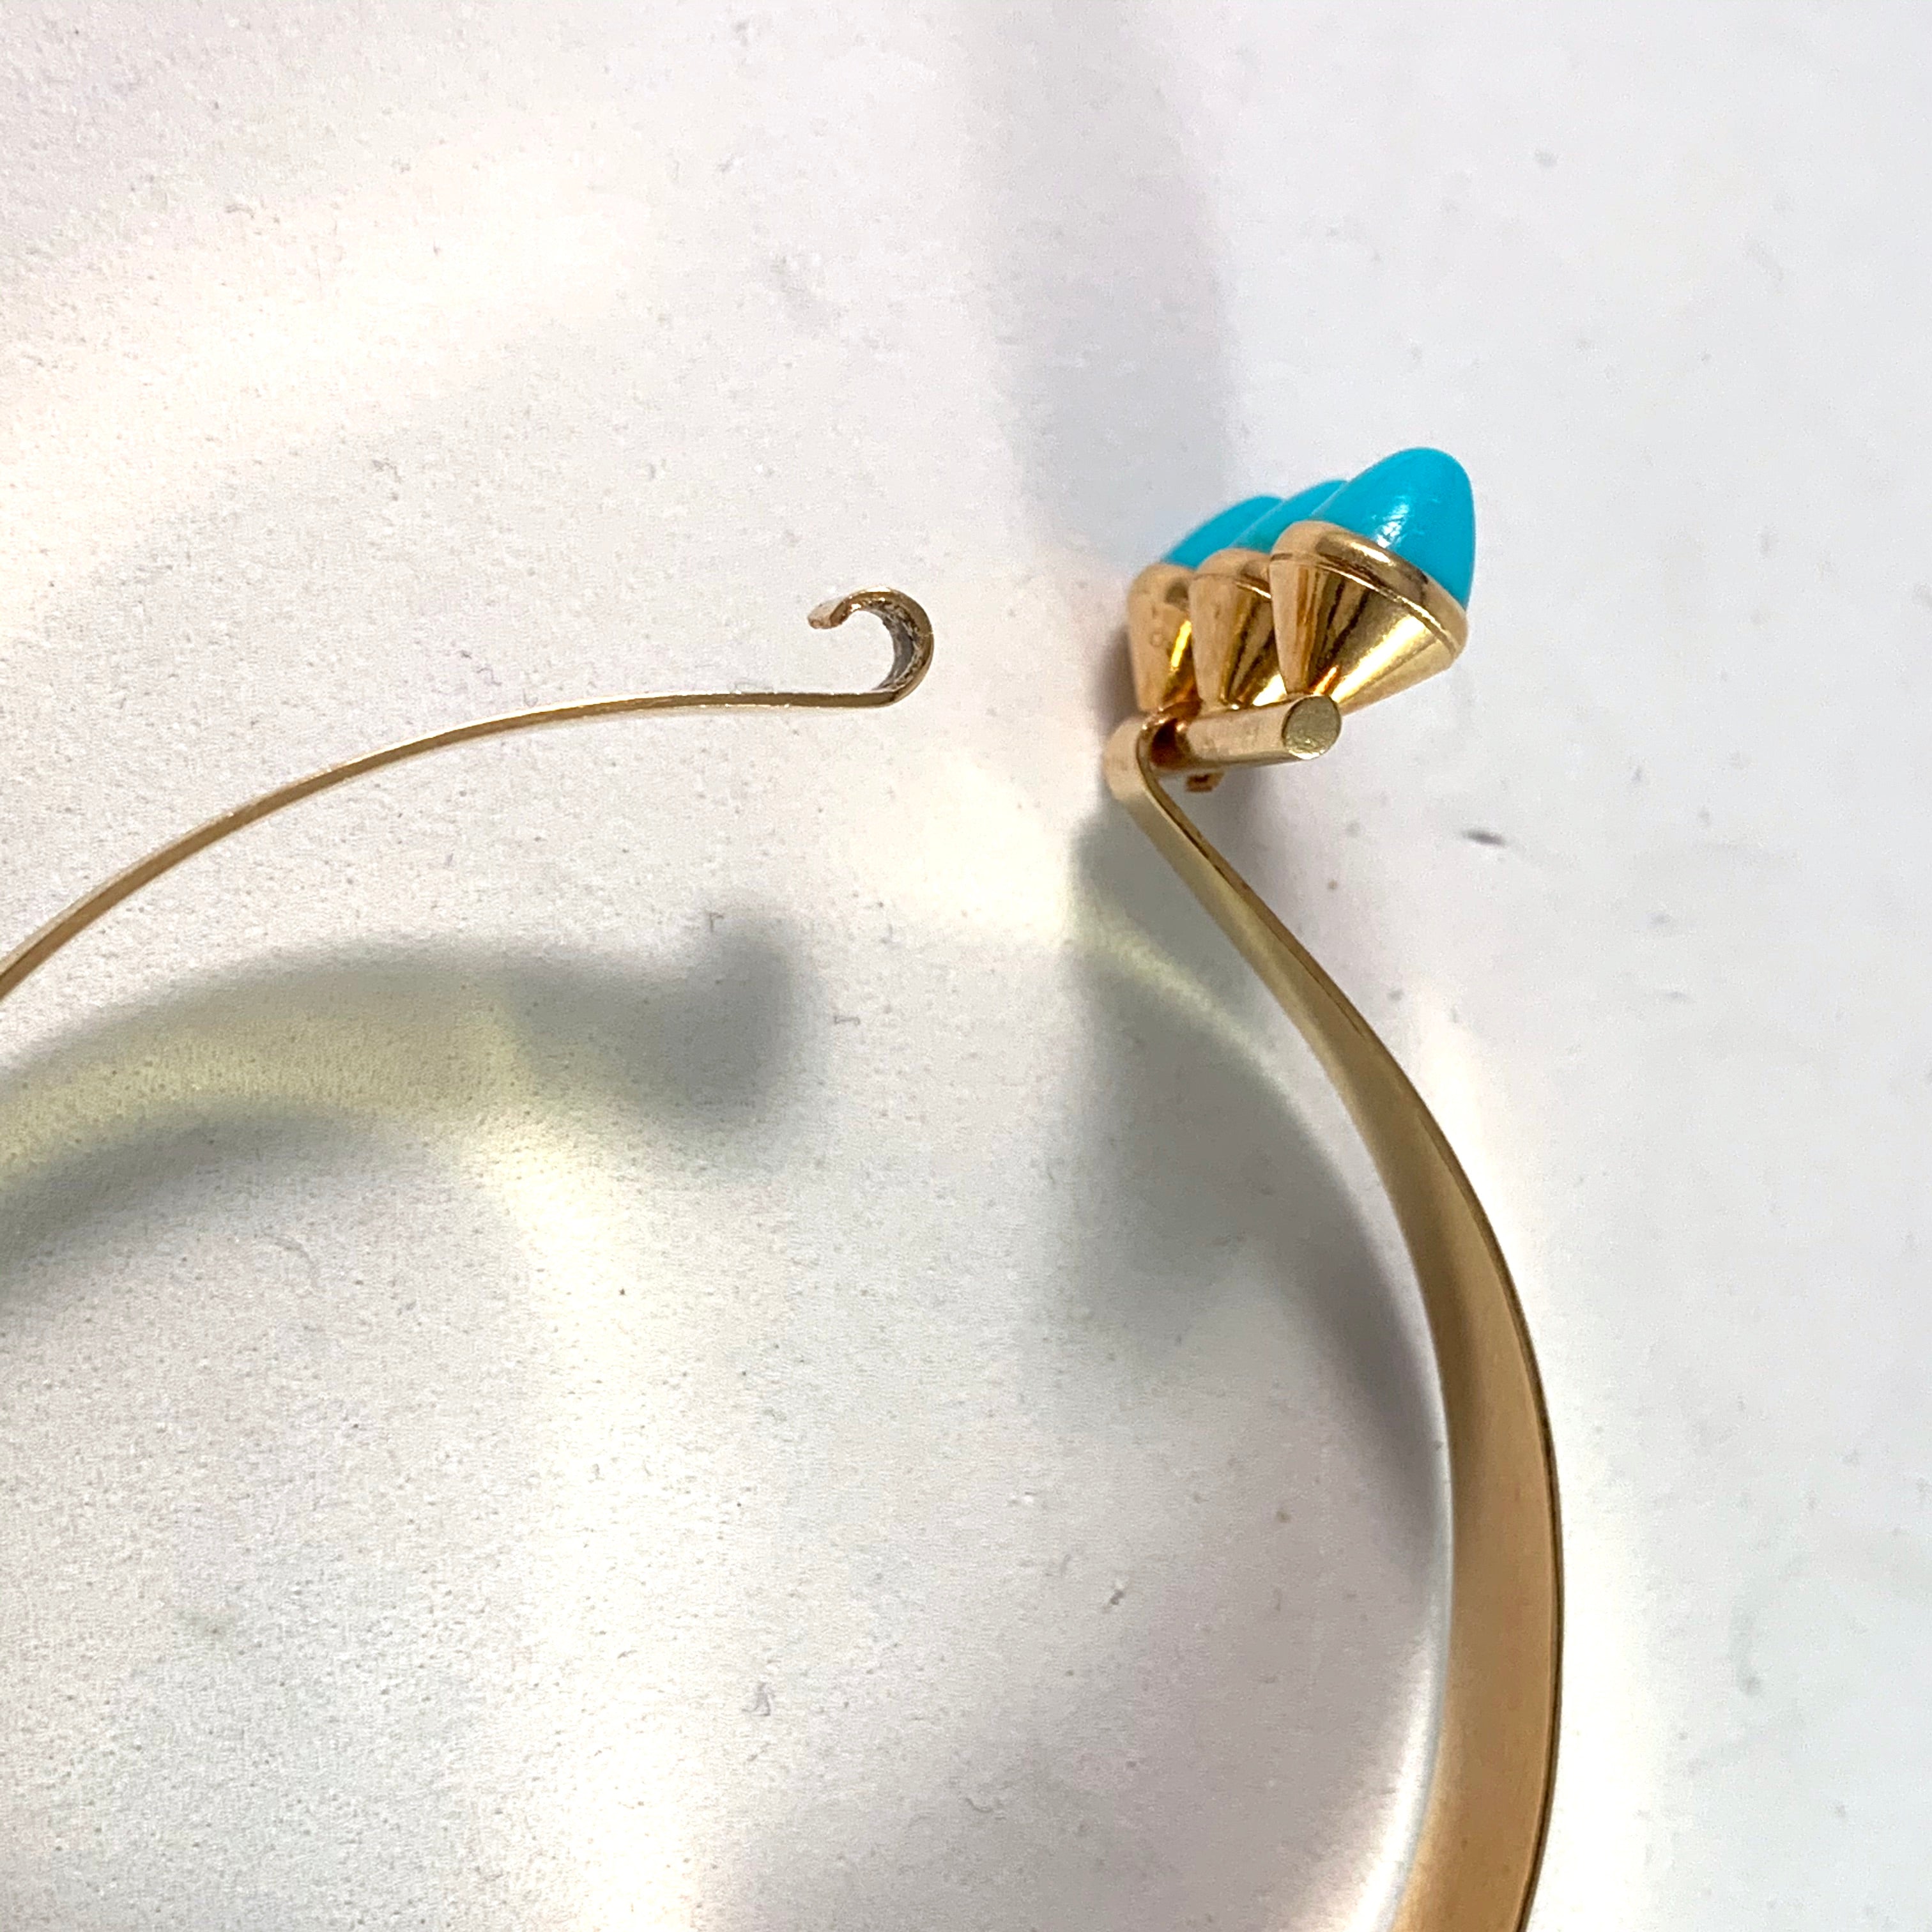 PeGe for Alton, Sweden 1966 18k Gold Turquoise Bangle Bracelet.